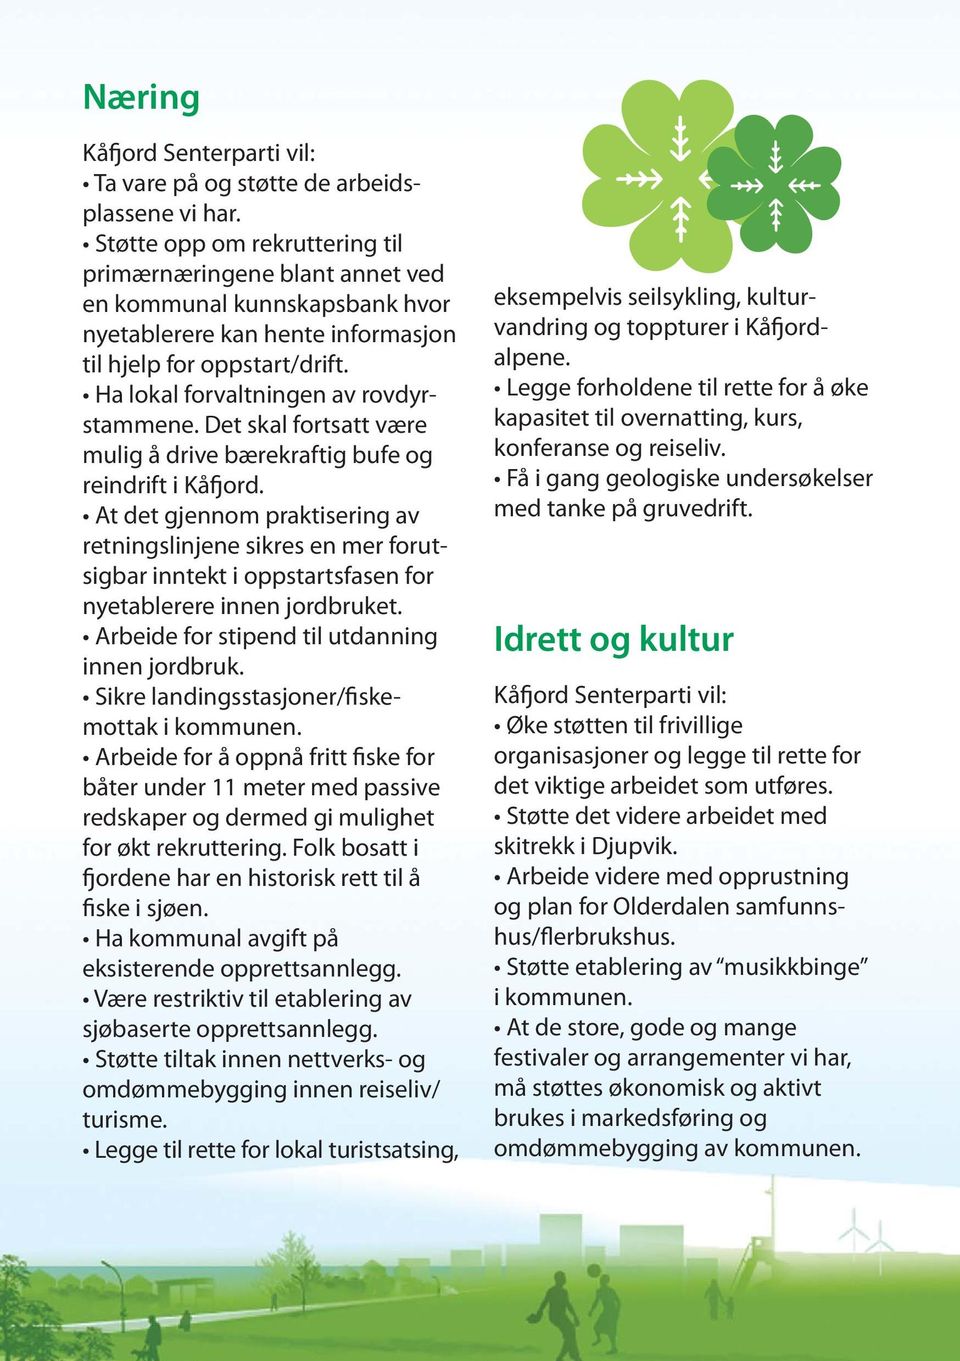 Det skal fortsatt være mulig å drive bærekraftig bufe og reindrift i Kåfjord.